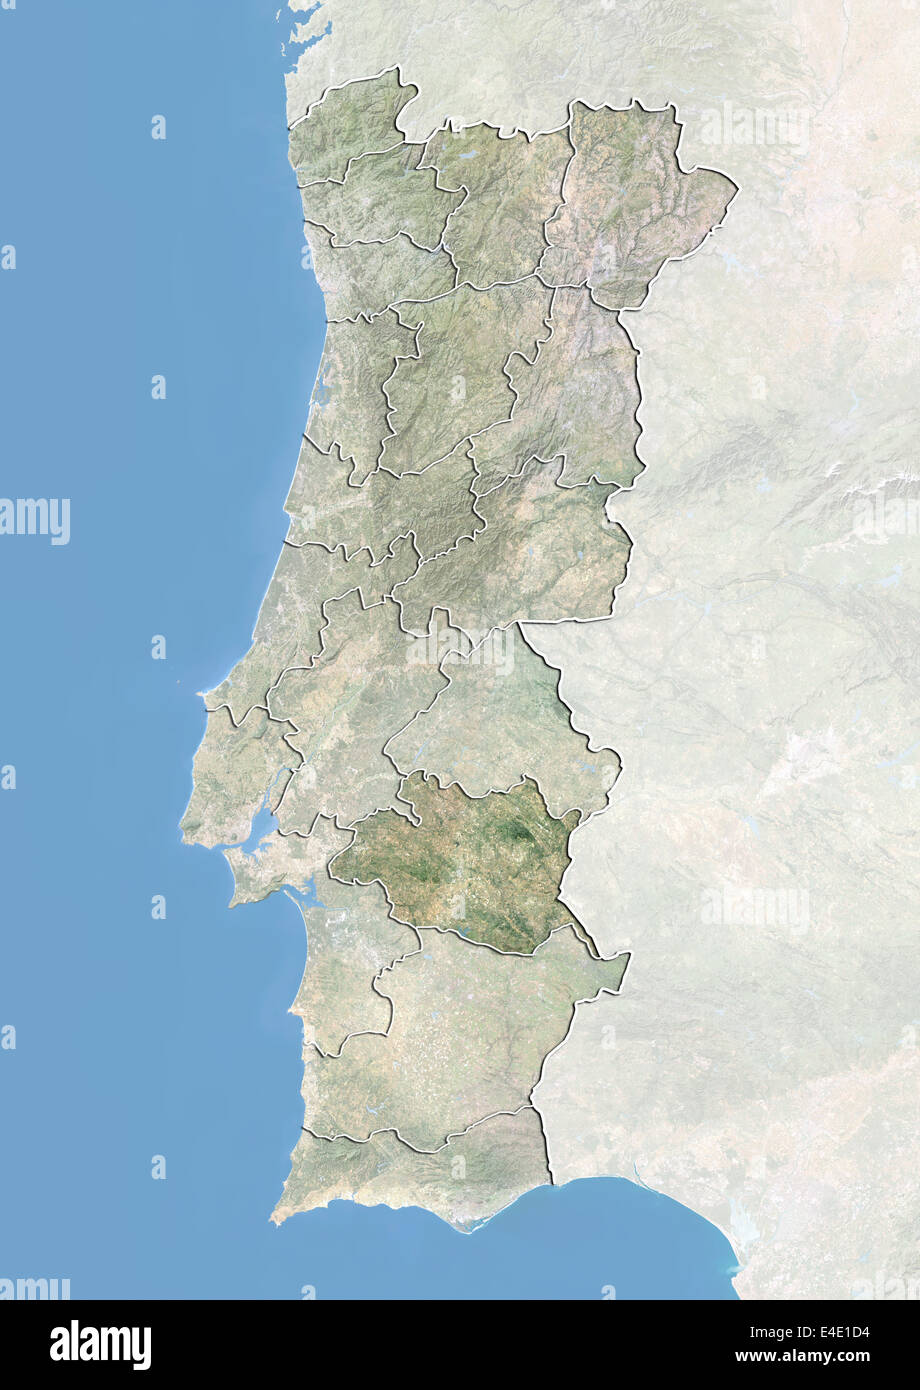 Le Portugal et le District d'Évora, image satellite avec effet de choc Banque D'Images